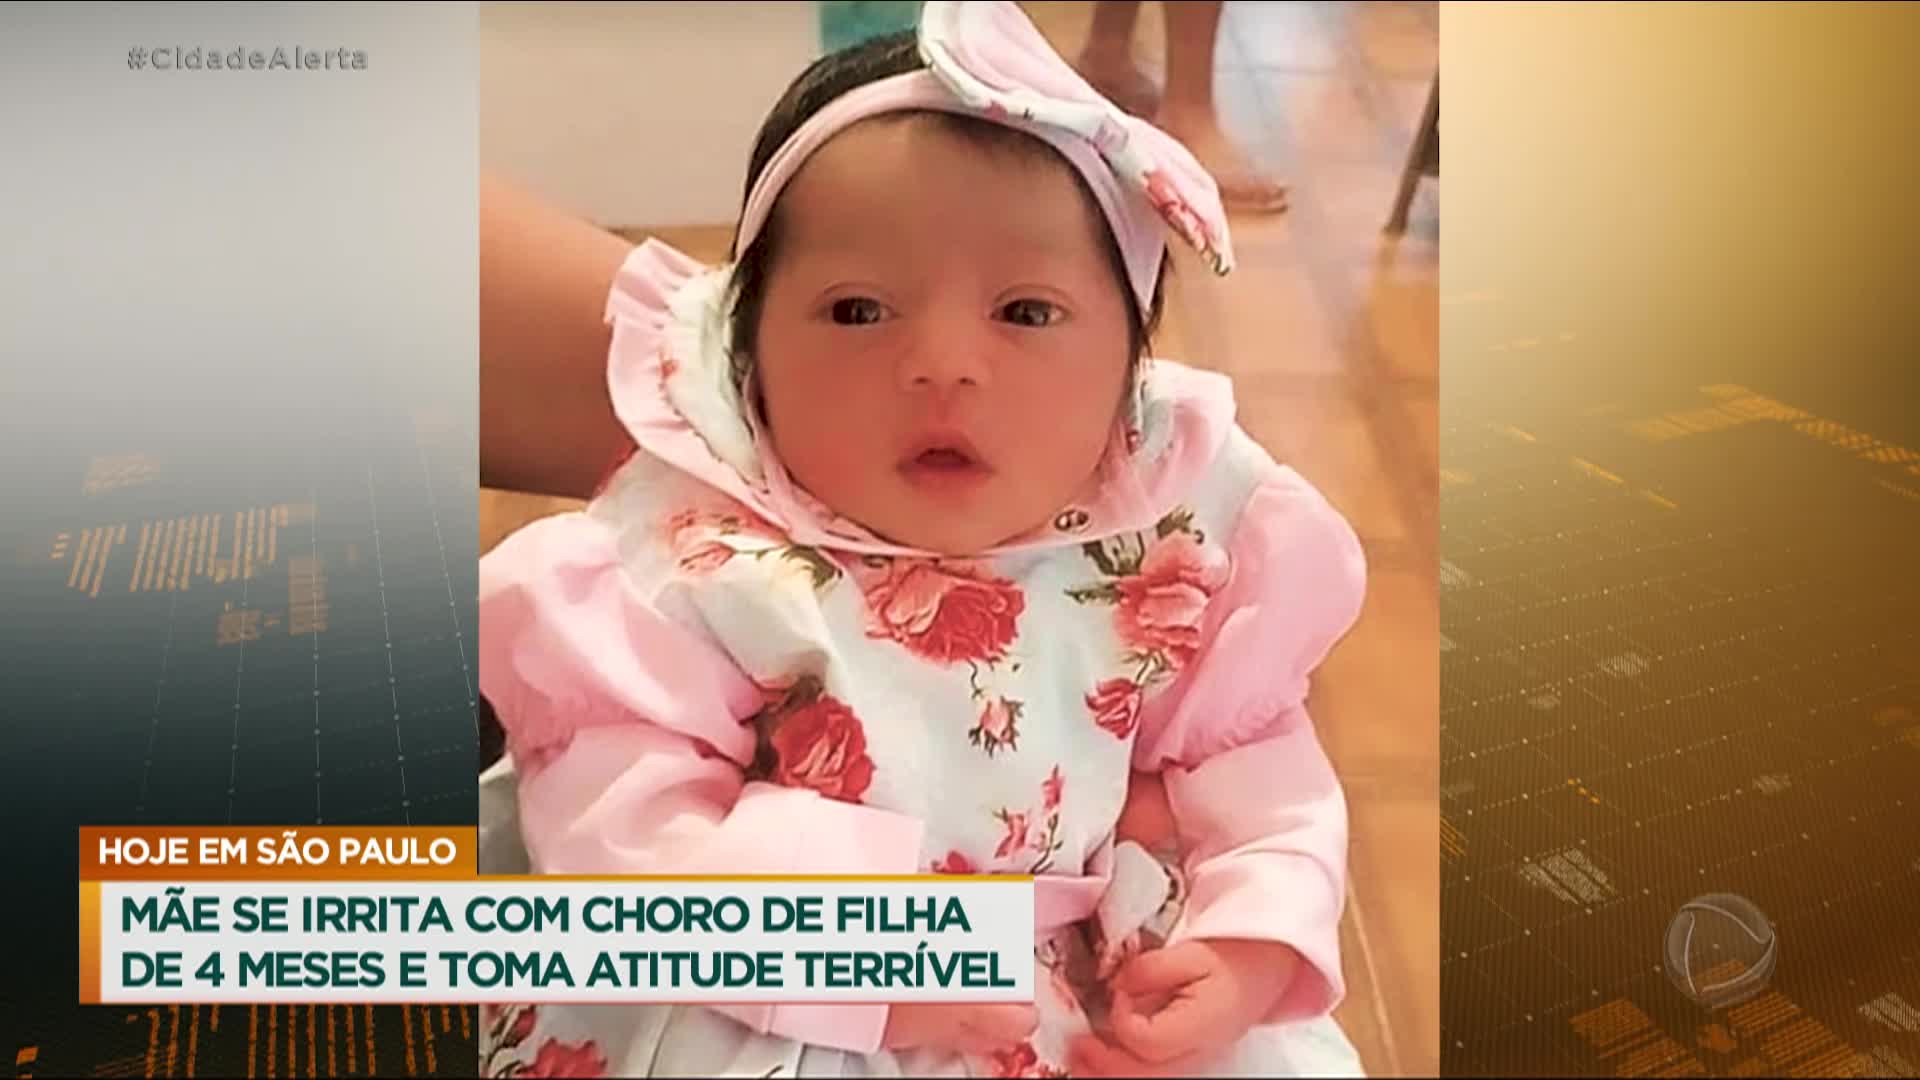 Vídeo: Mãe se irrita com choro da filha de 4 meses e mata a criança